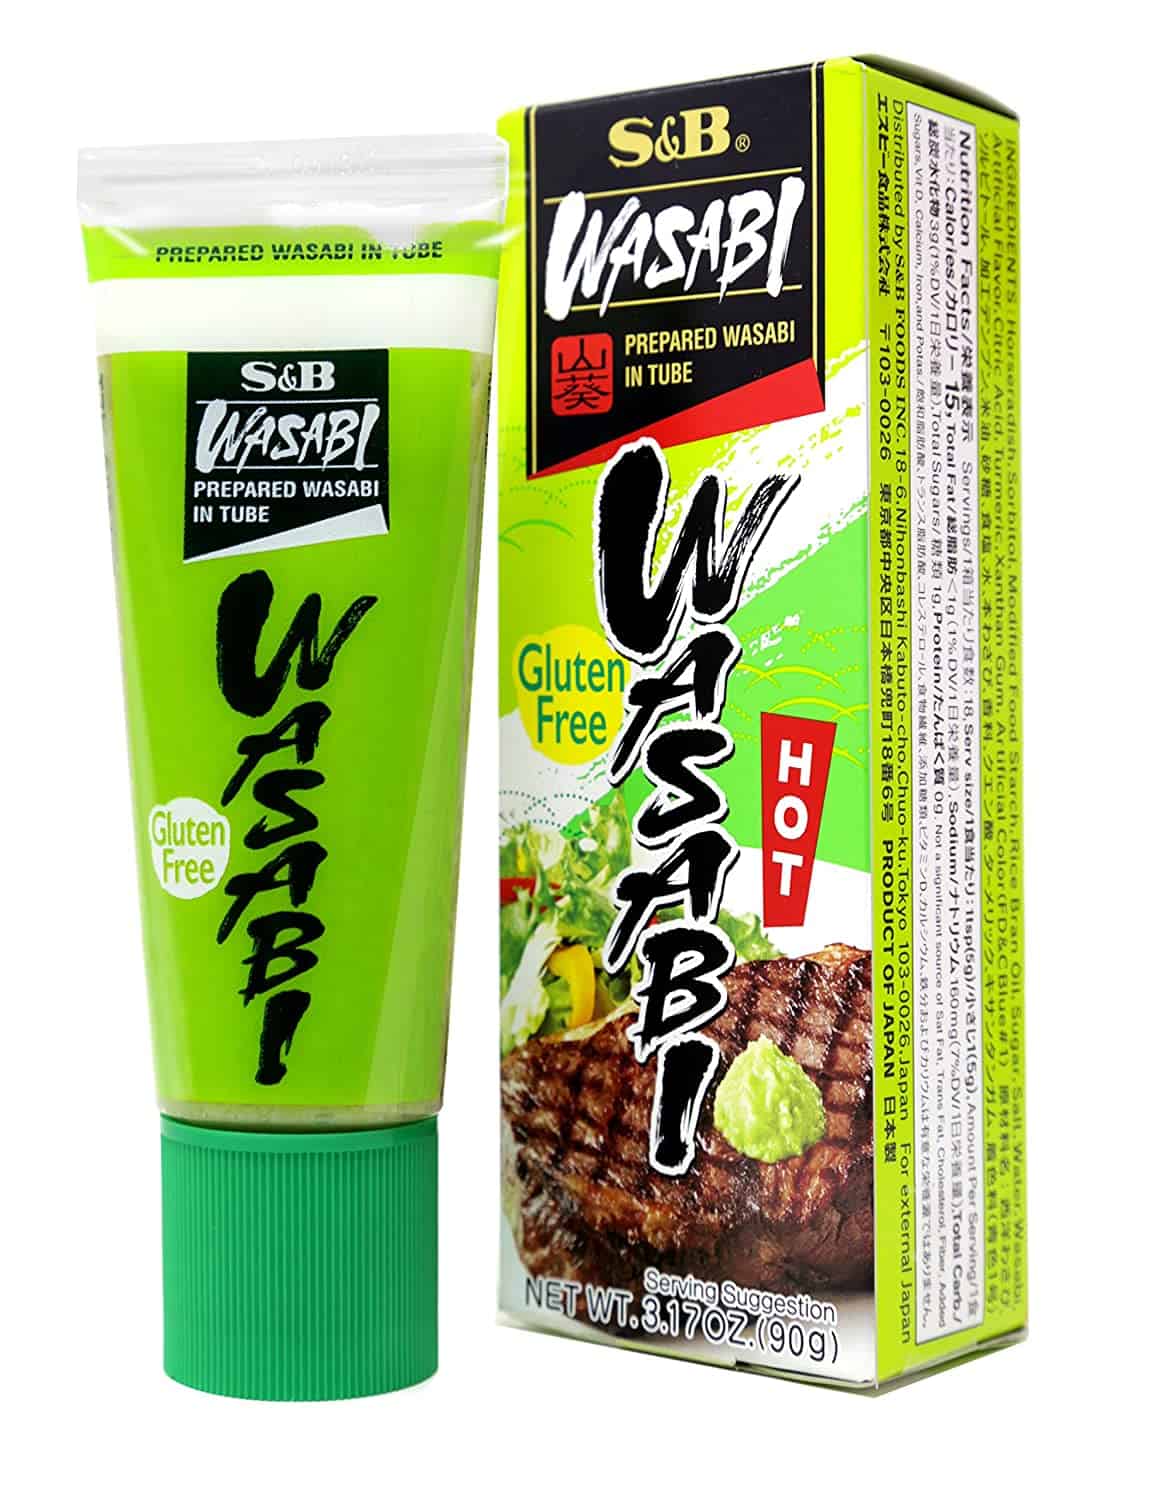 Bered wasabi som ersättning för senapspulver